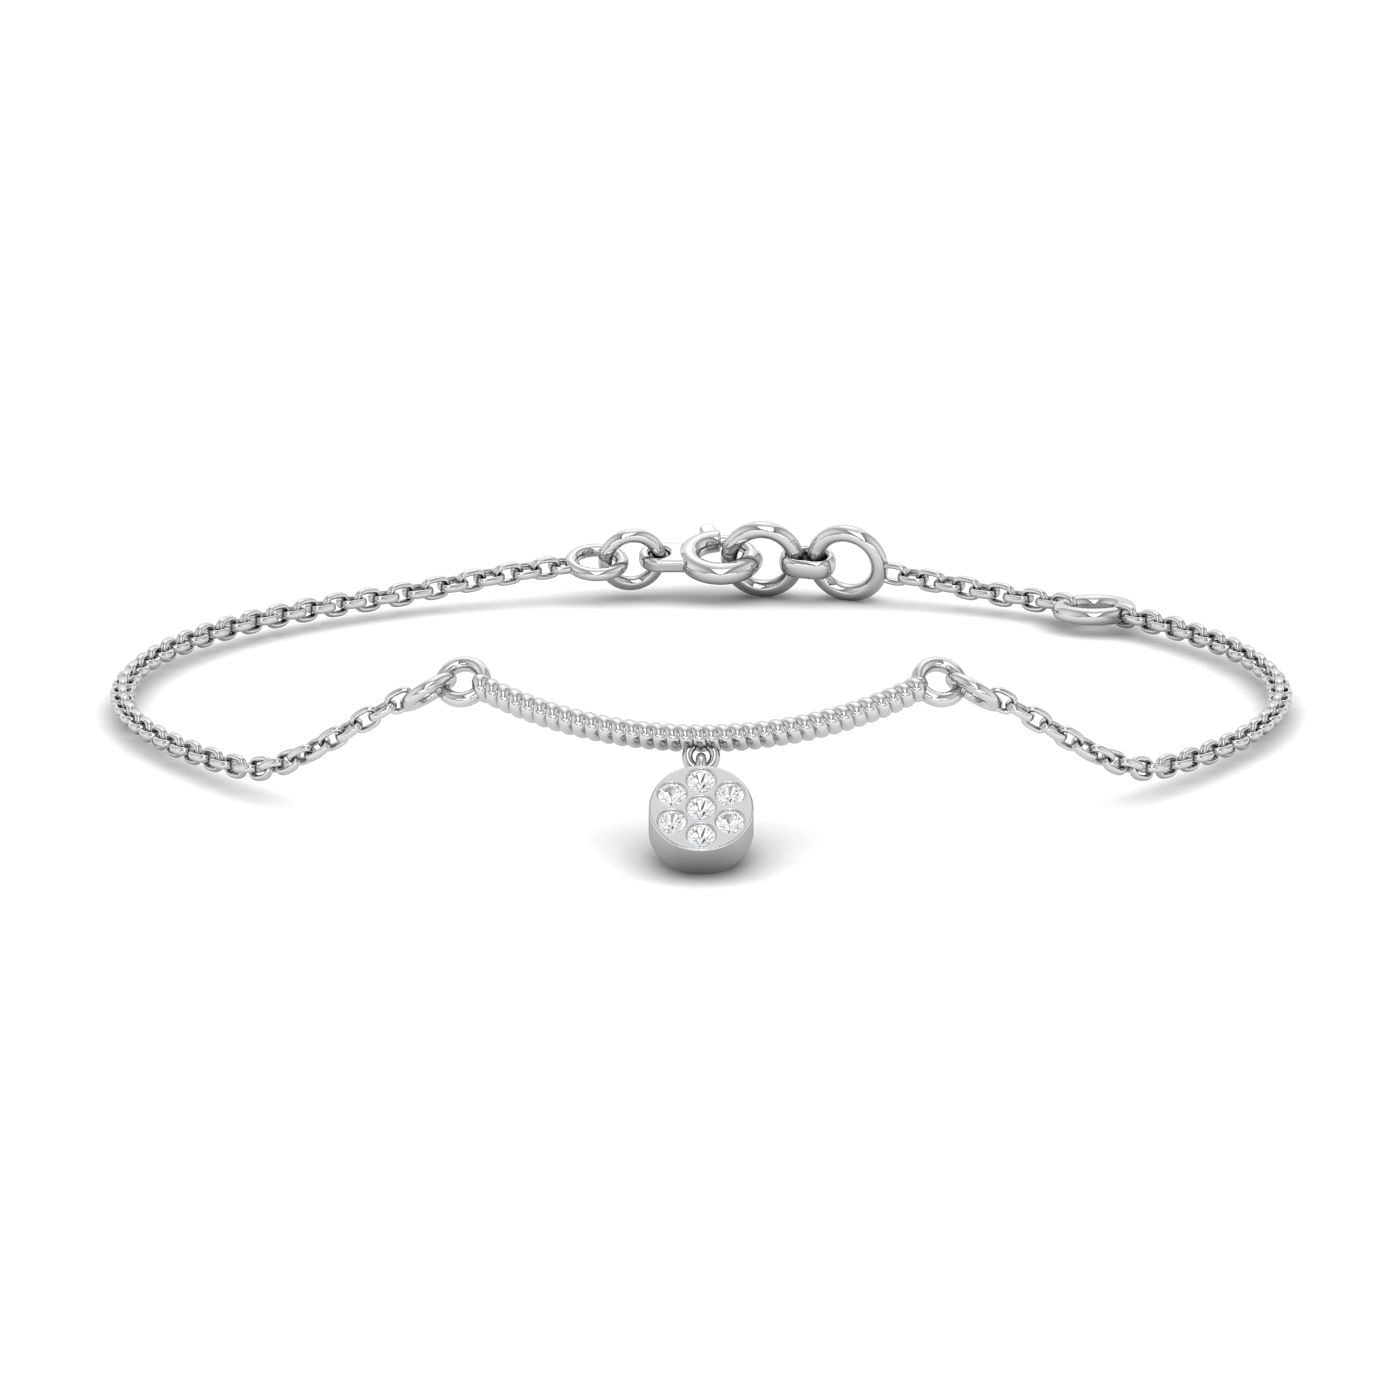 Modern design Anika Diamond Bracelet with white gold